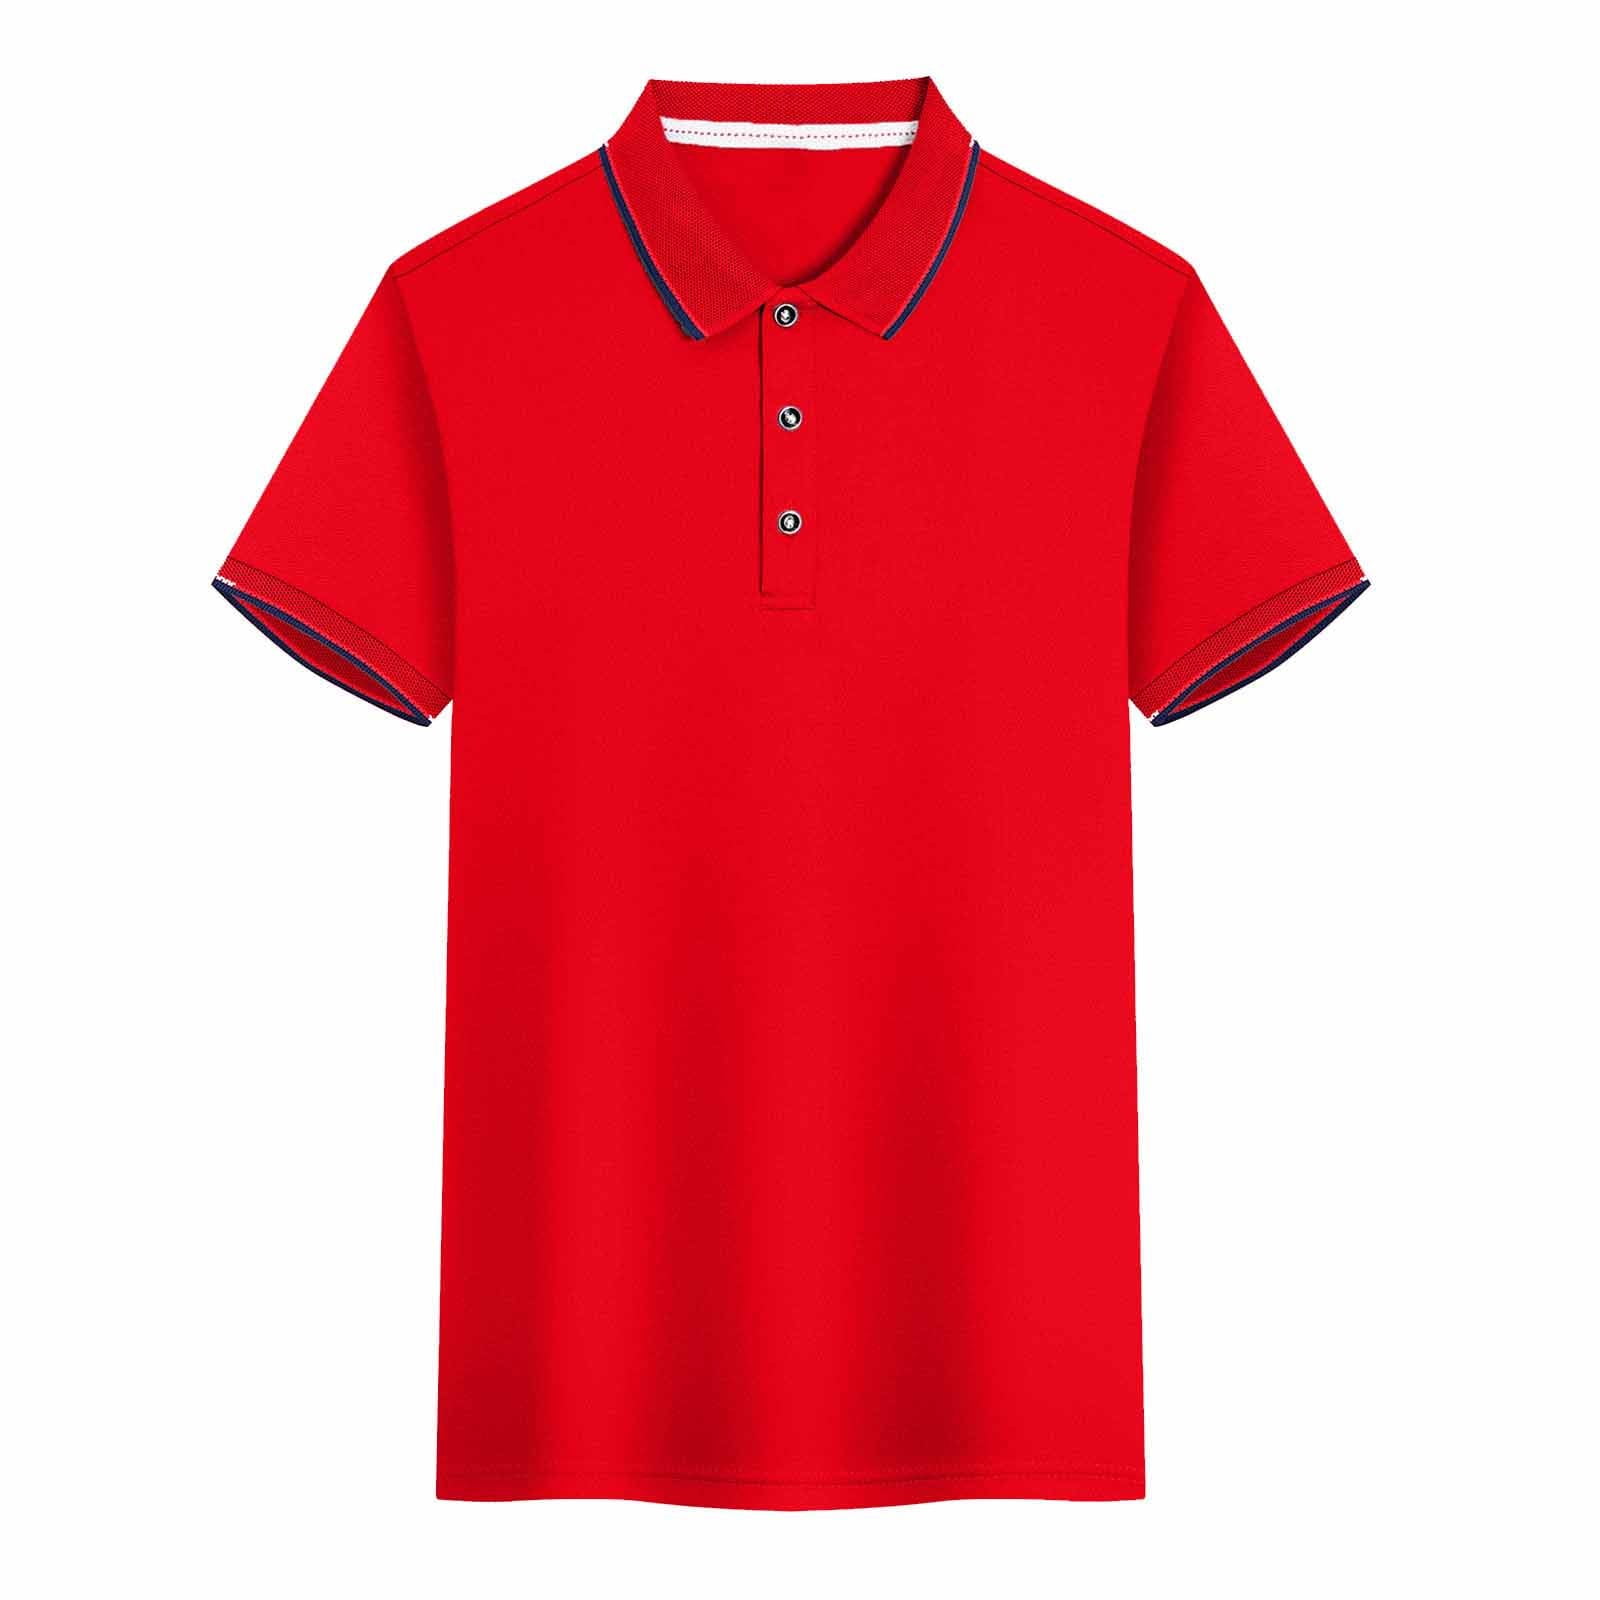 Vivianyo HD Women's Sport Cool DRI Polo Shirt, Moisture-Wicking ...